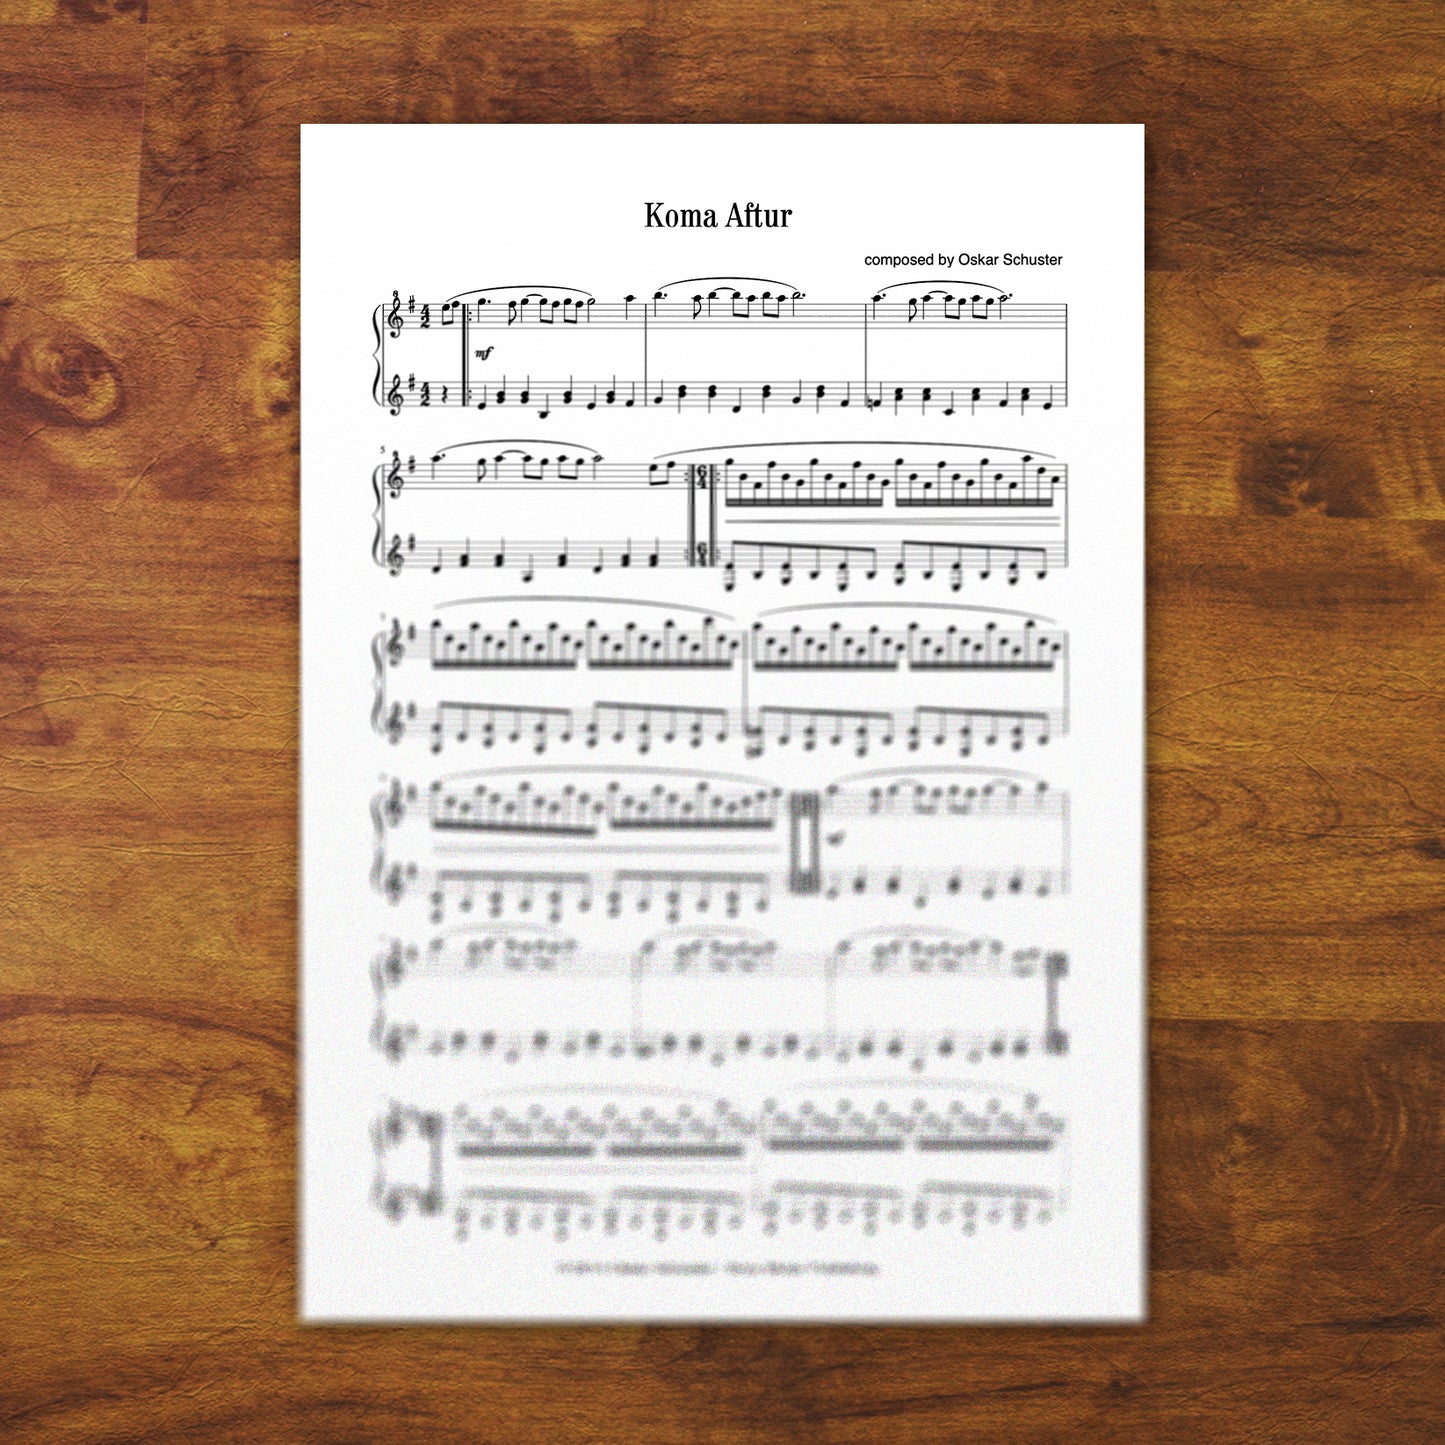 Piano Sheets "Koma Aftur"